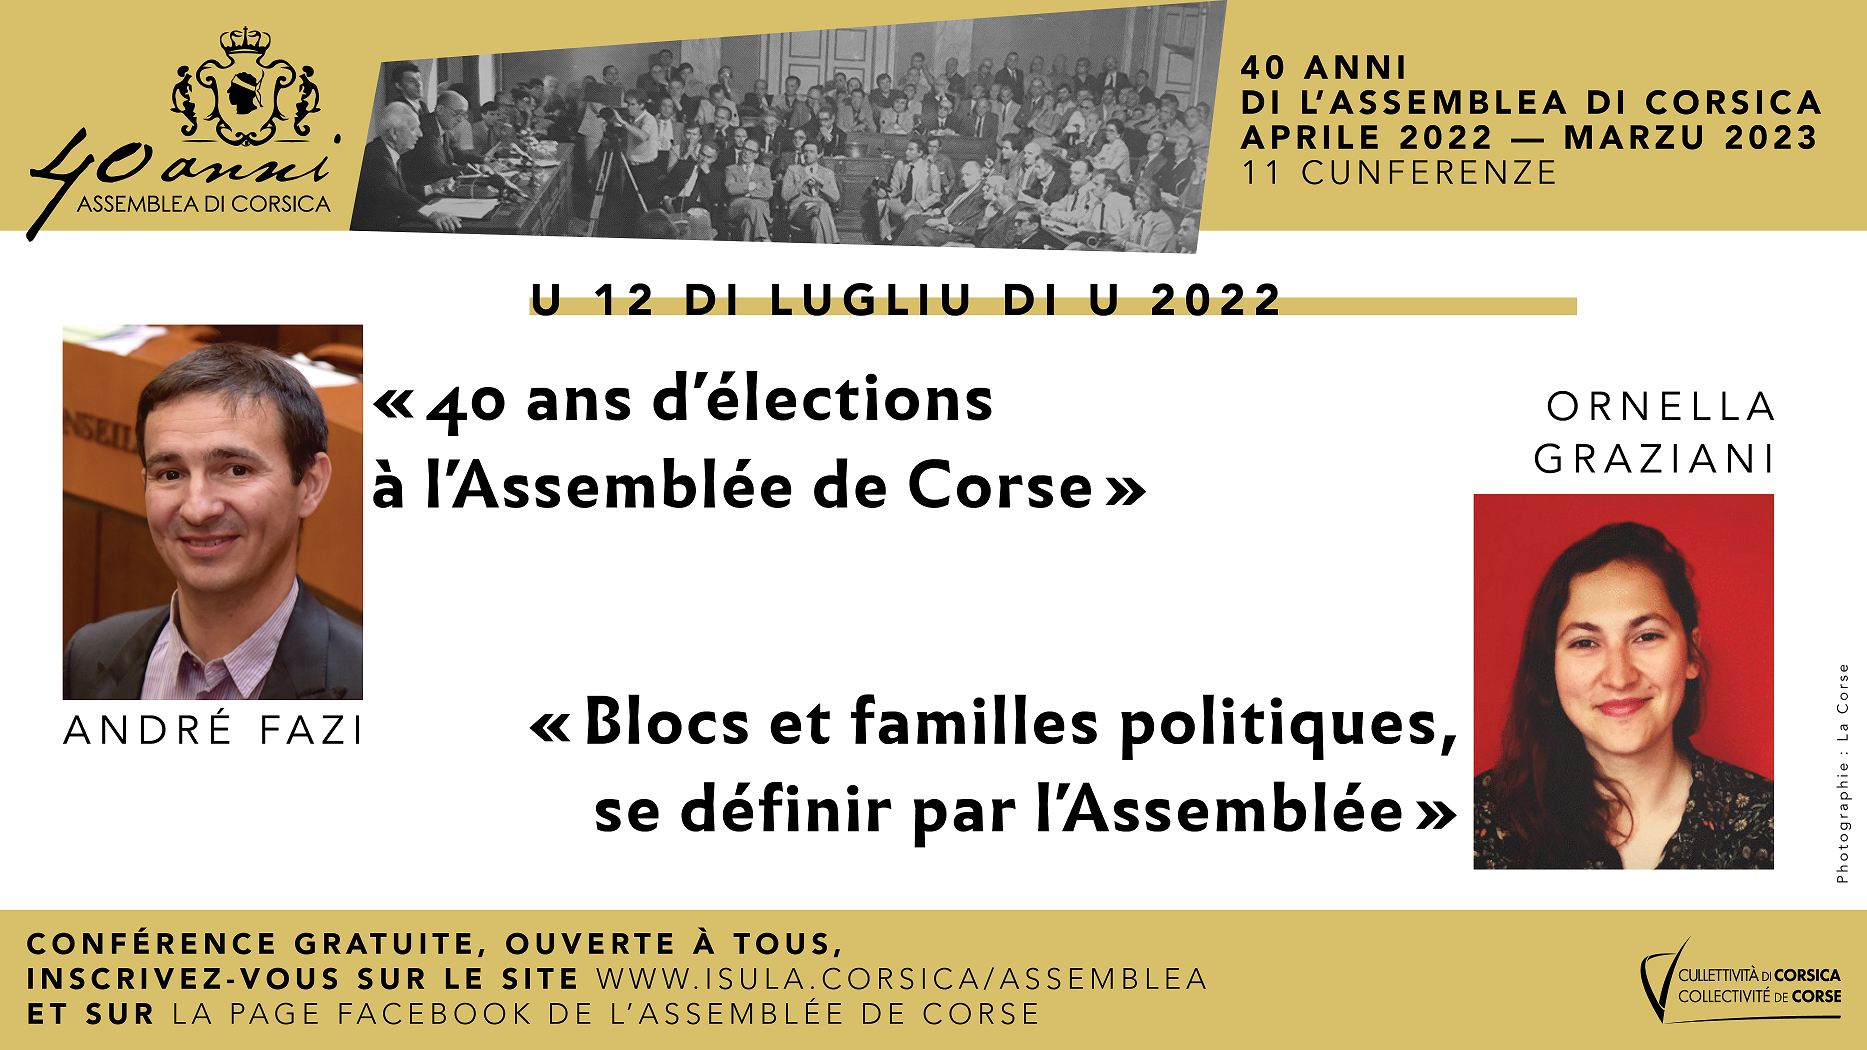 André Fazi et Ornella Graziani animeront, le 12 juillet à 18h au Musée de la Corse de Corti, la prochaine conférence du cycle consacré aux 40 ans de l'Assemblea di Corsica 